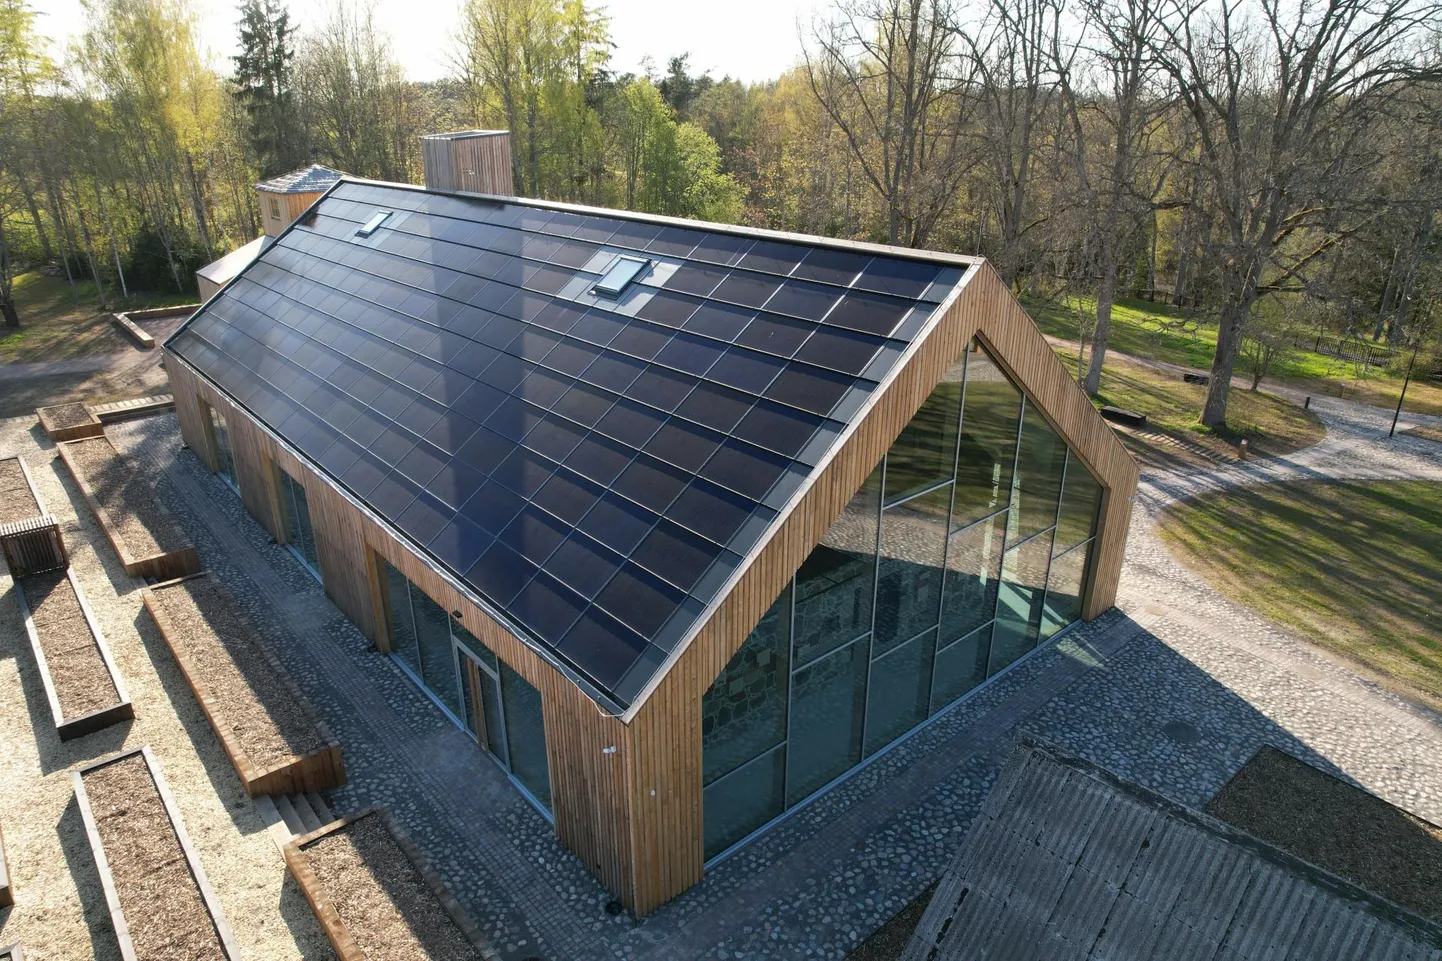 Solarstone'i päikesekatus aitab majaomanikul energiat püüda otse katuselt. Fotol on Mulgi elamuskeskuse hoone, millel on Solarstone'i katus.